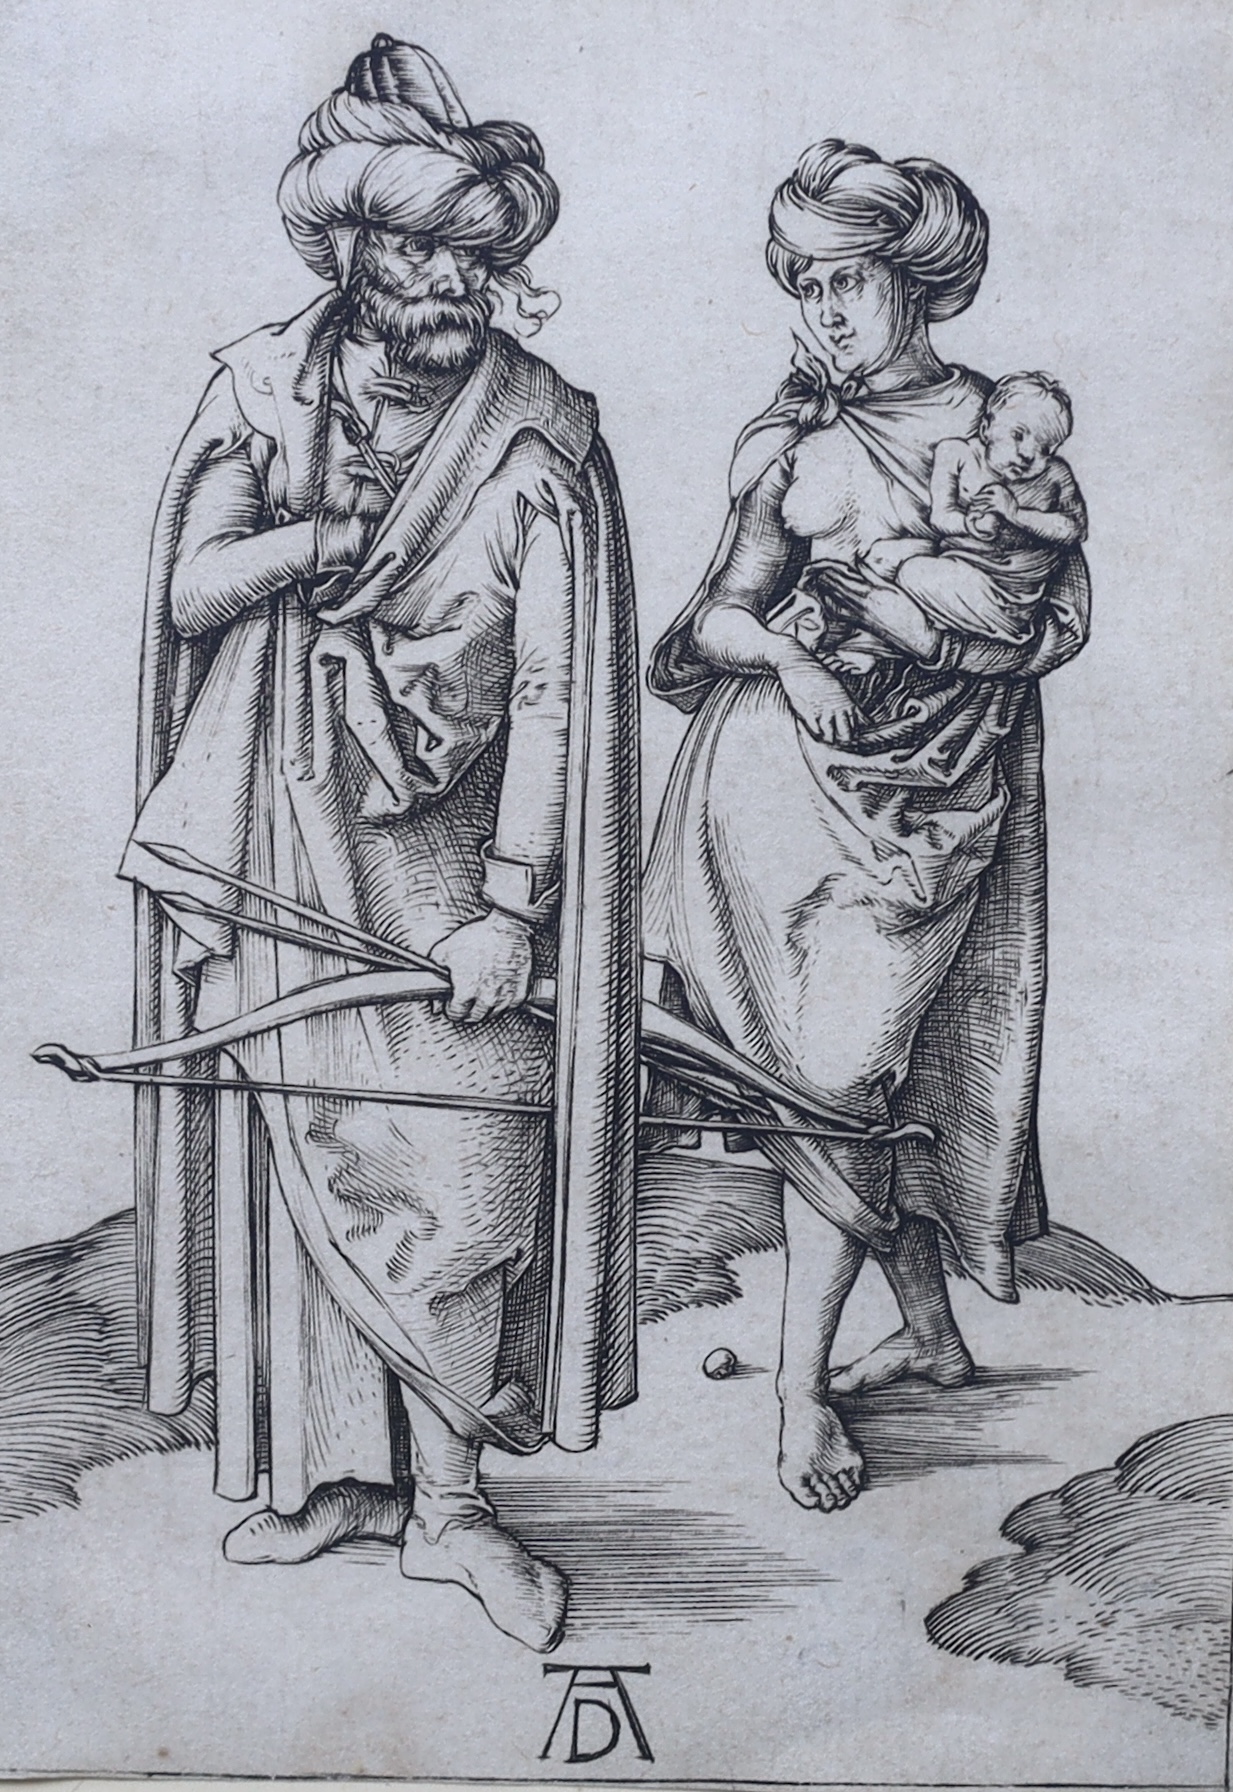 Albrecht Durer (German, 1471-1528), 'The Turkish Family', etching, 10.5 x 7.5cm